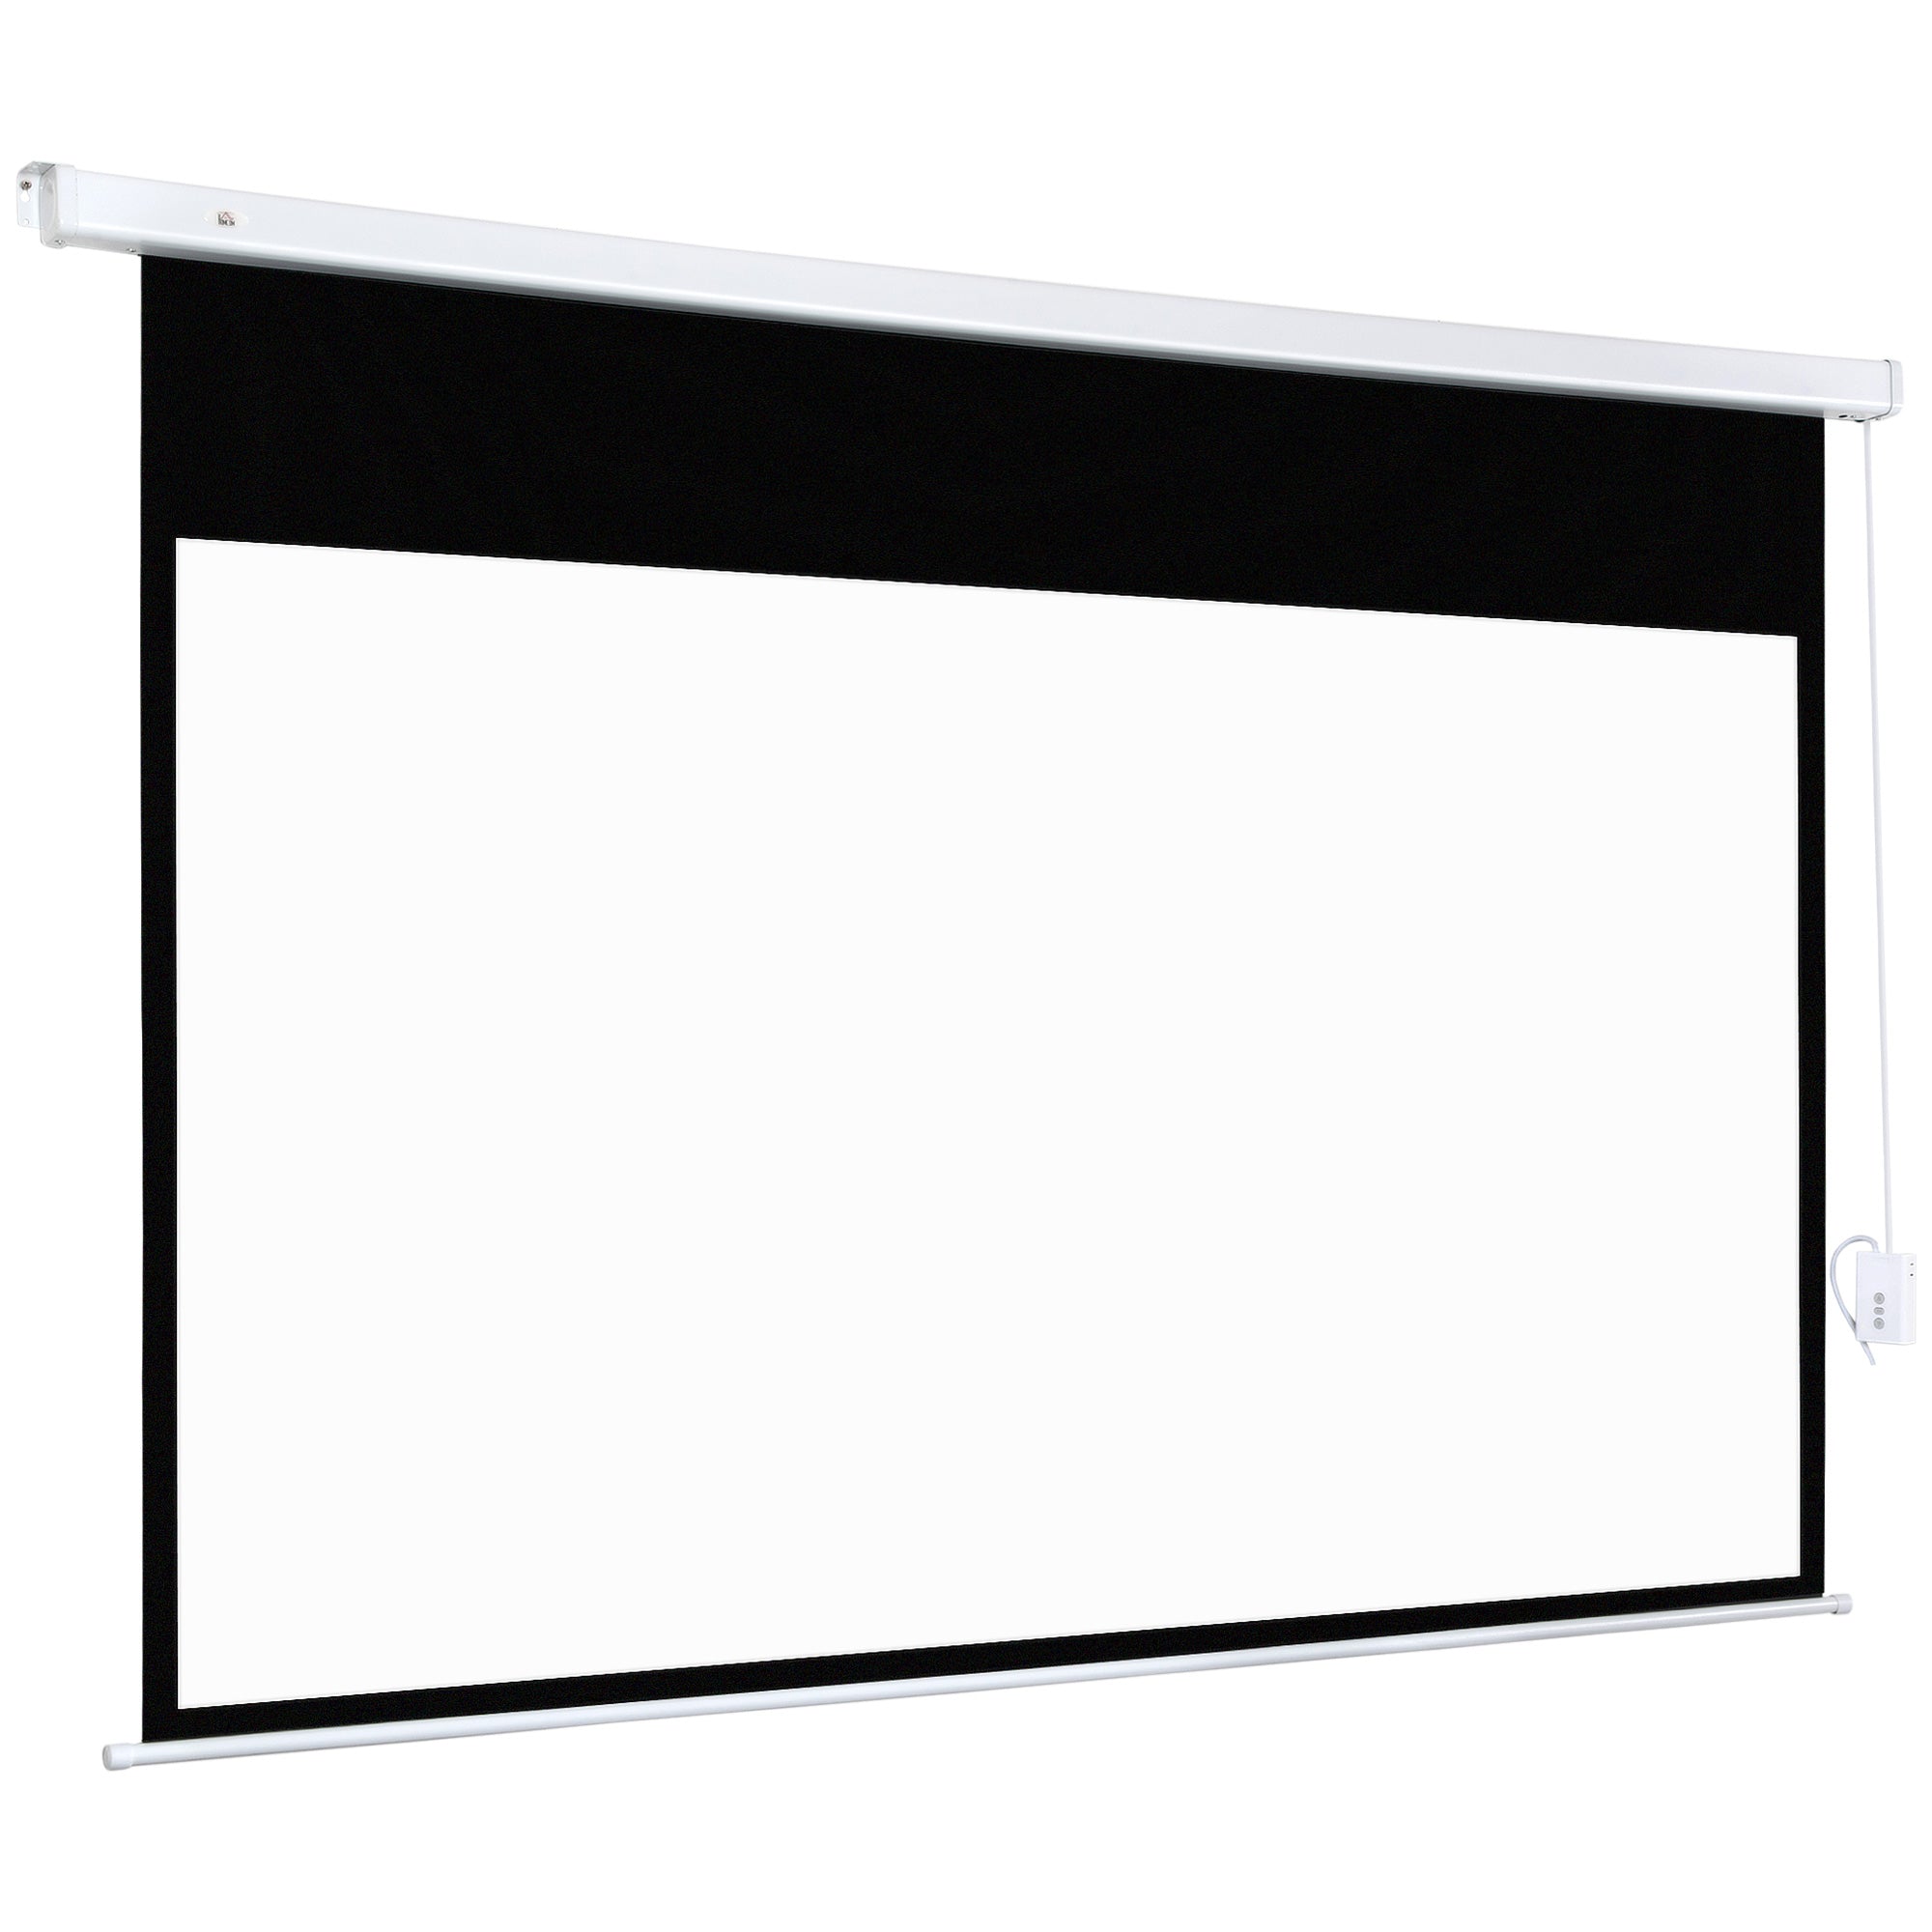 Telo Proiettore 100” 16:9 Portatile 253x7,5x168 cm in PVC e Metallo Bianco  – acquista su Giordano Shop